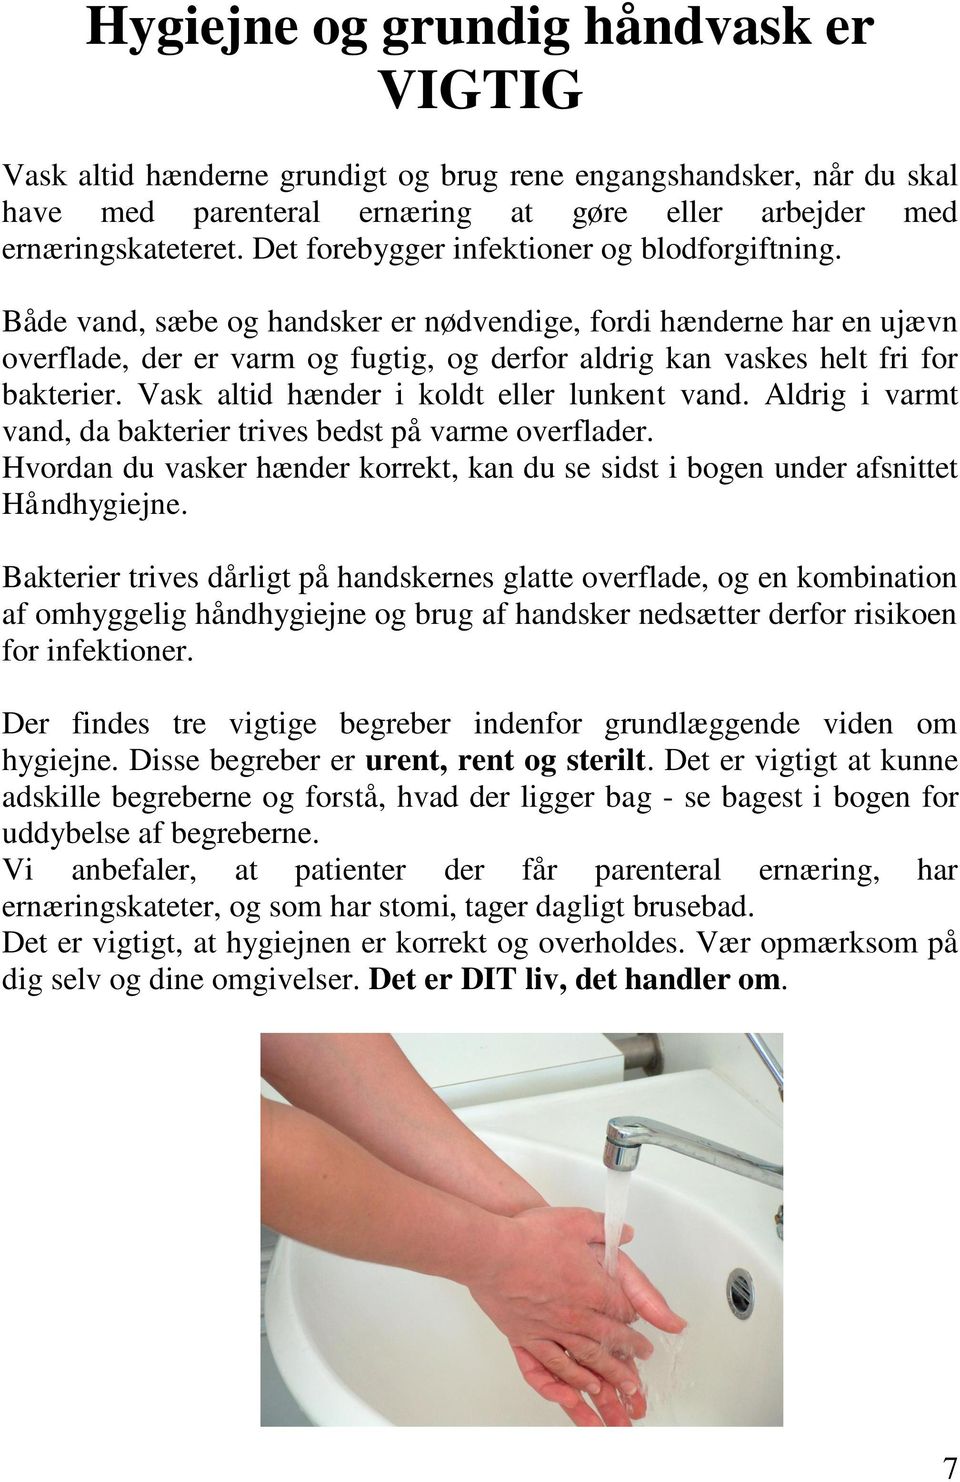 Forord. Medicinsk Mave-tarm-afdeling S, tlf - PDF Gratis download